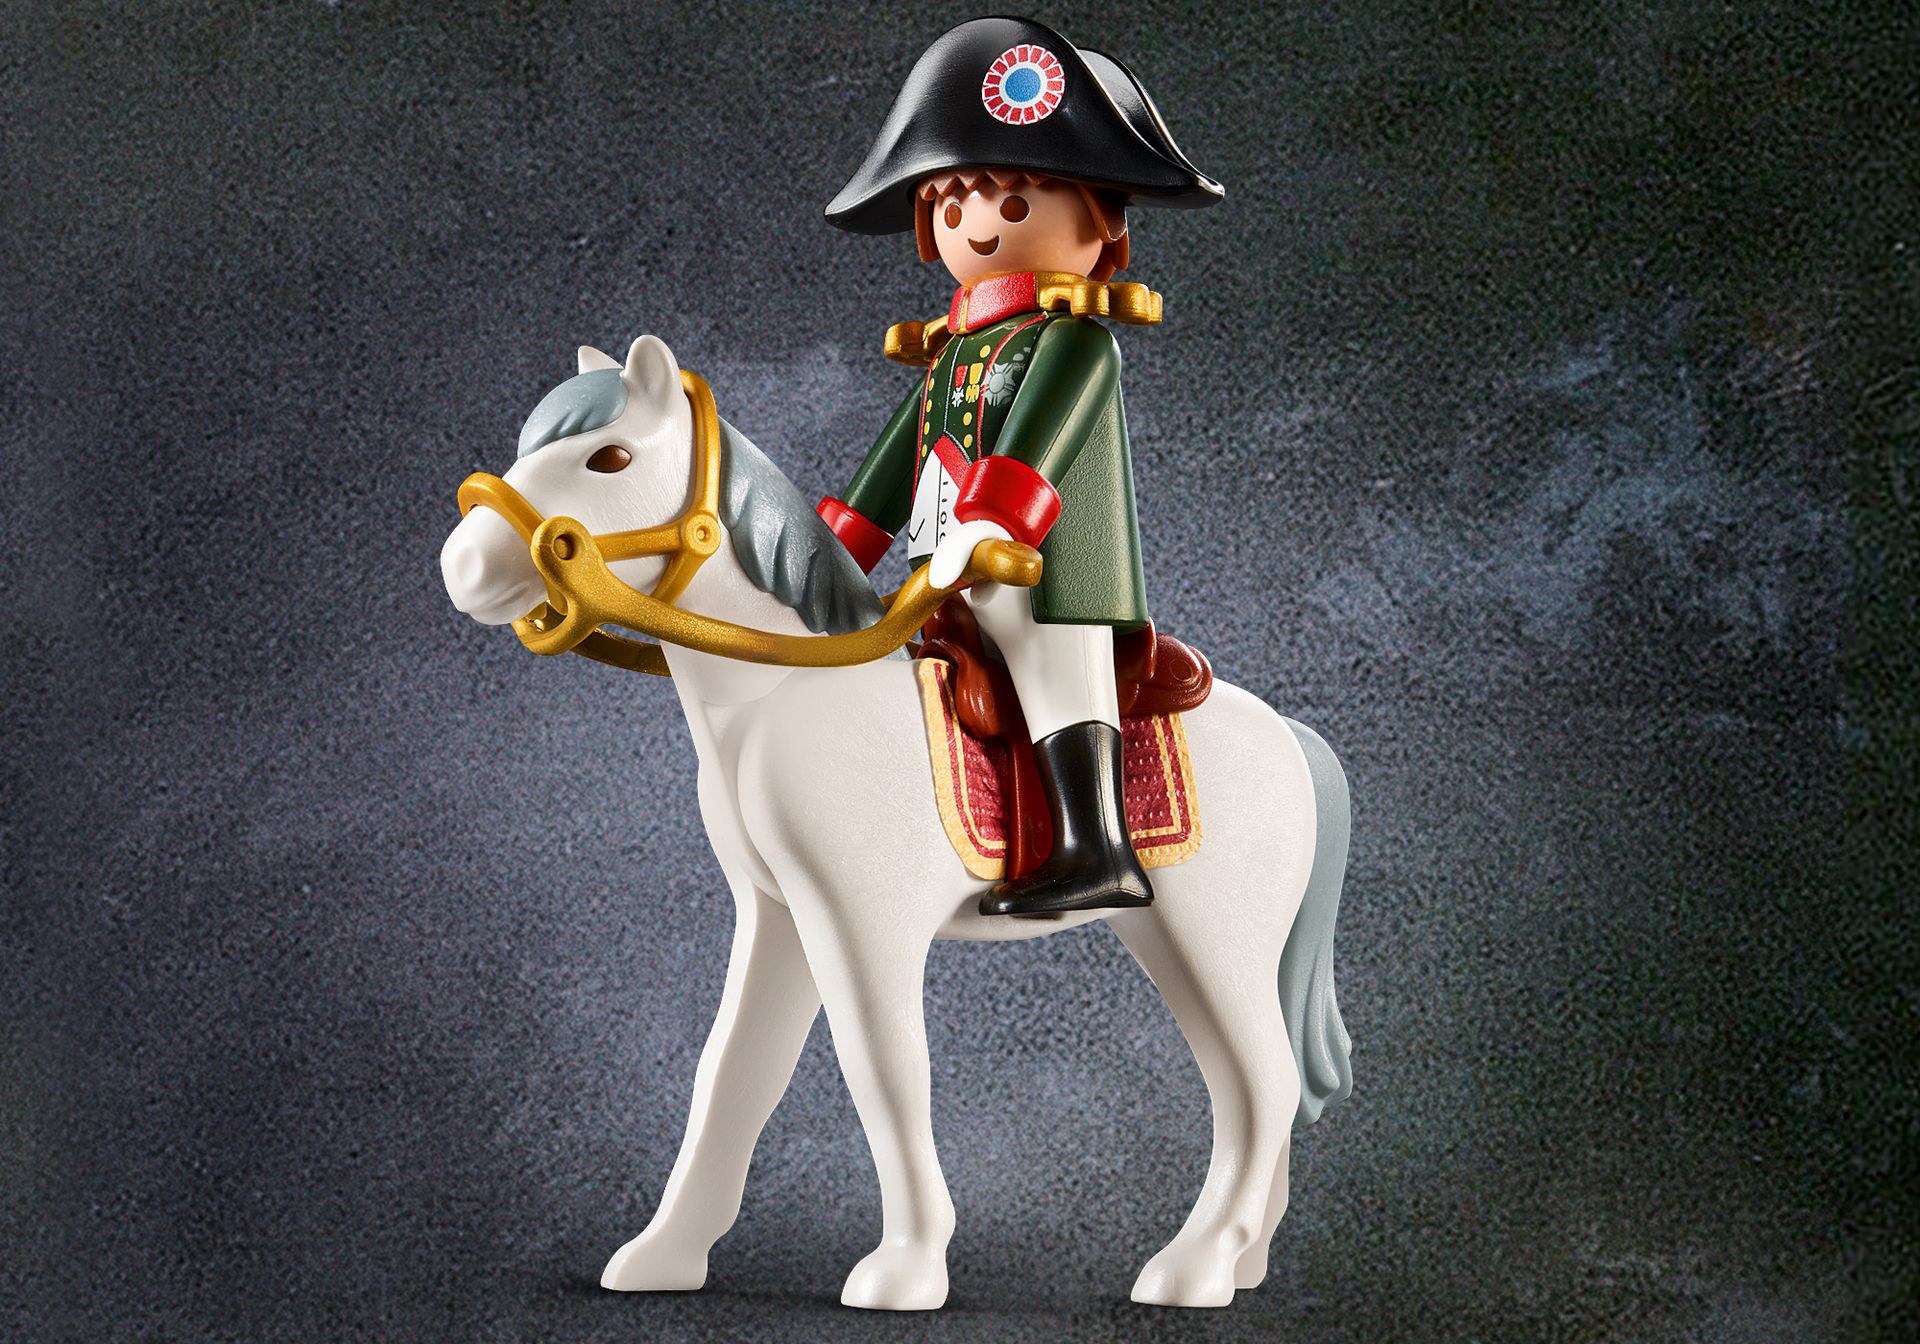 Playmobil 70679 Sonderfigur Napoleon Befreiungskriege Soldat Neu & OVP Waterloo 